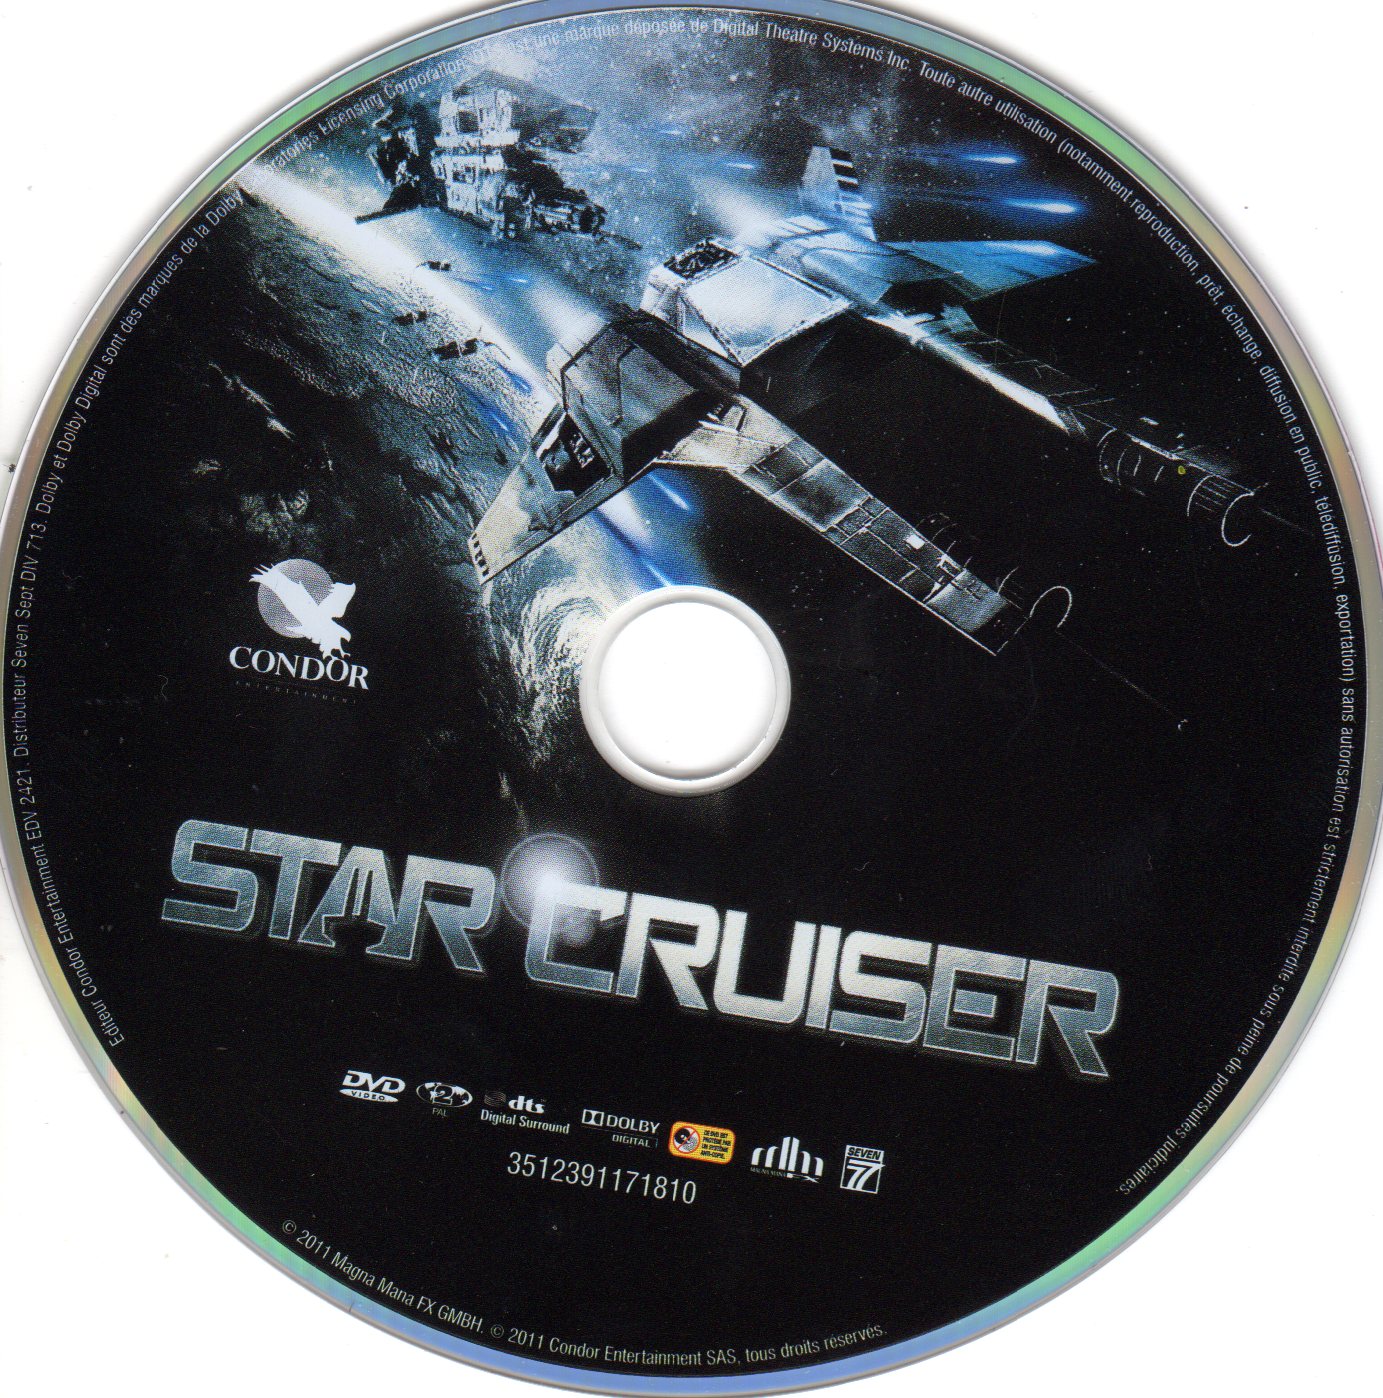 Star cruiser